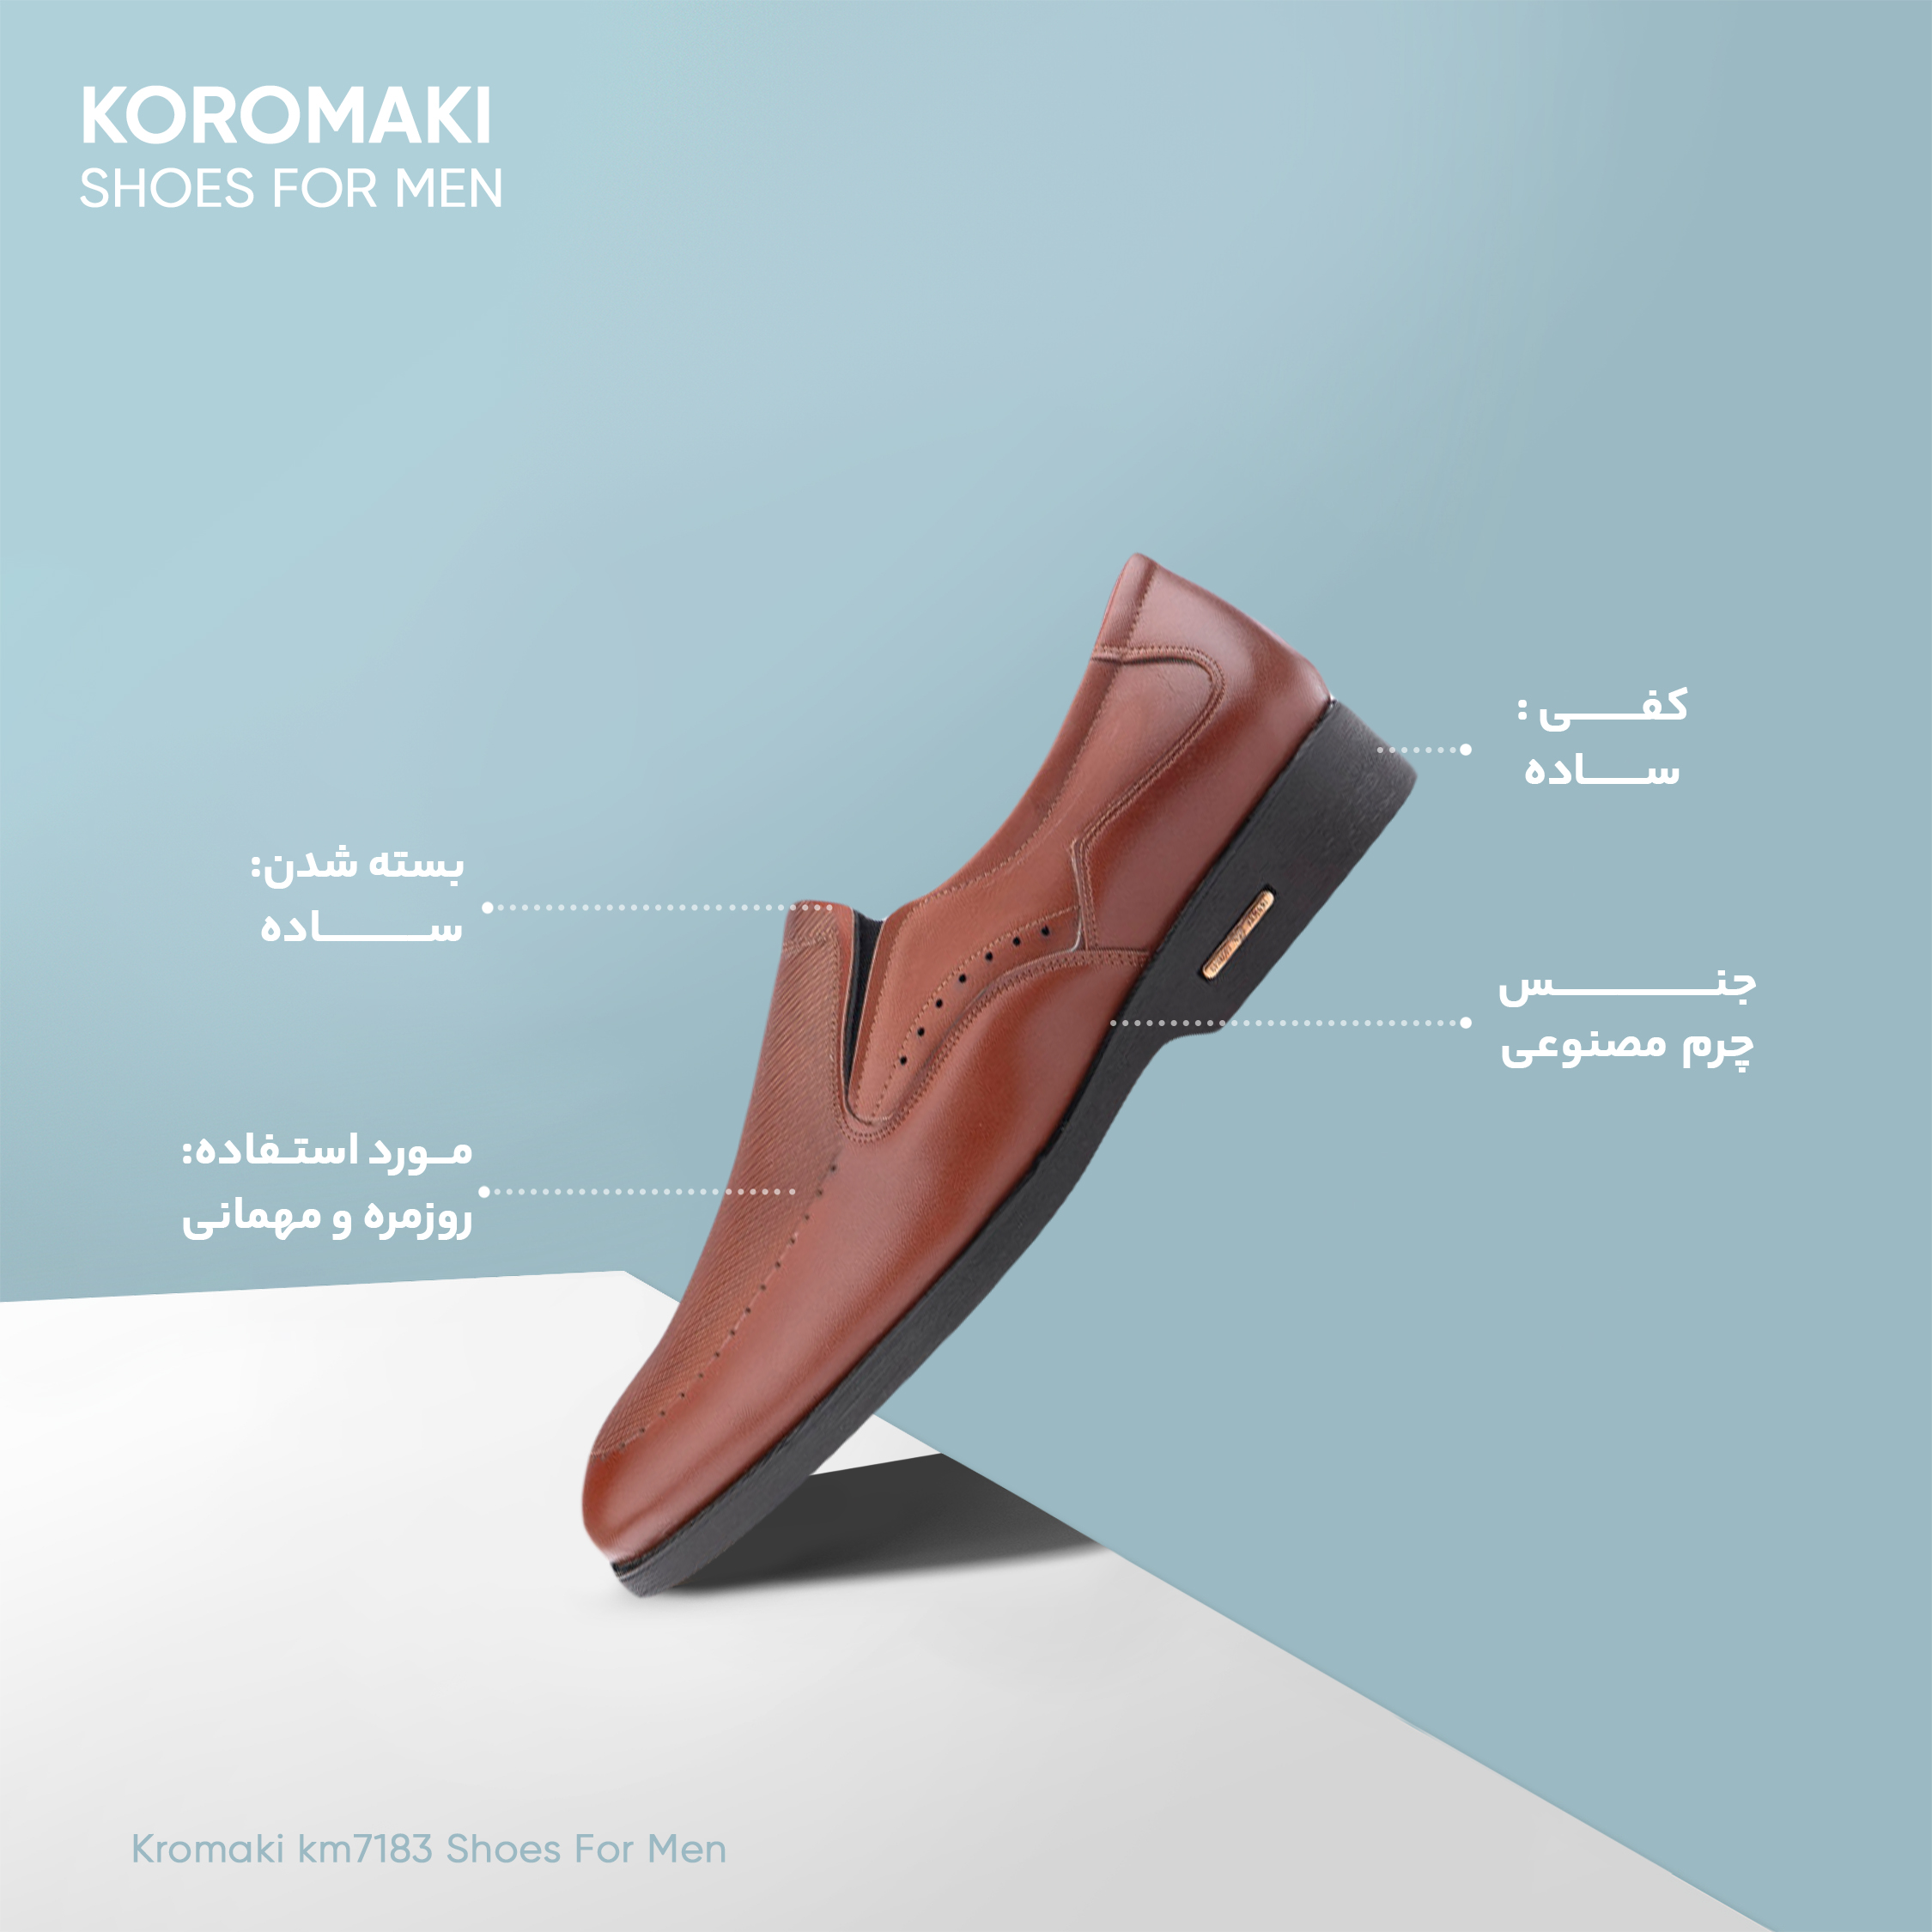 کفش مردانه کروماکی مدل km7183 -  - 9